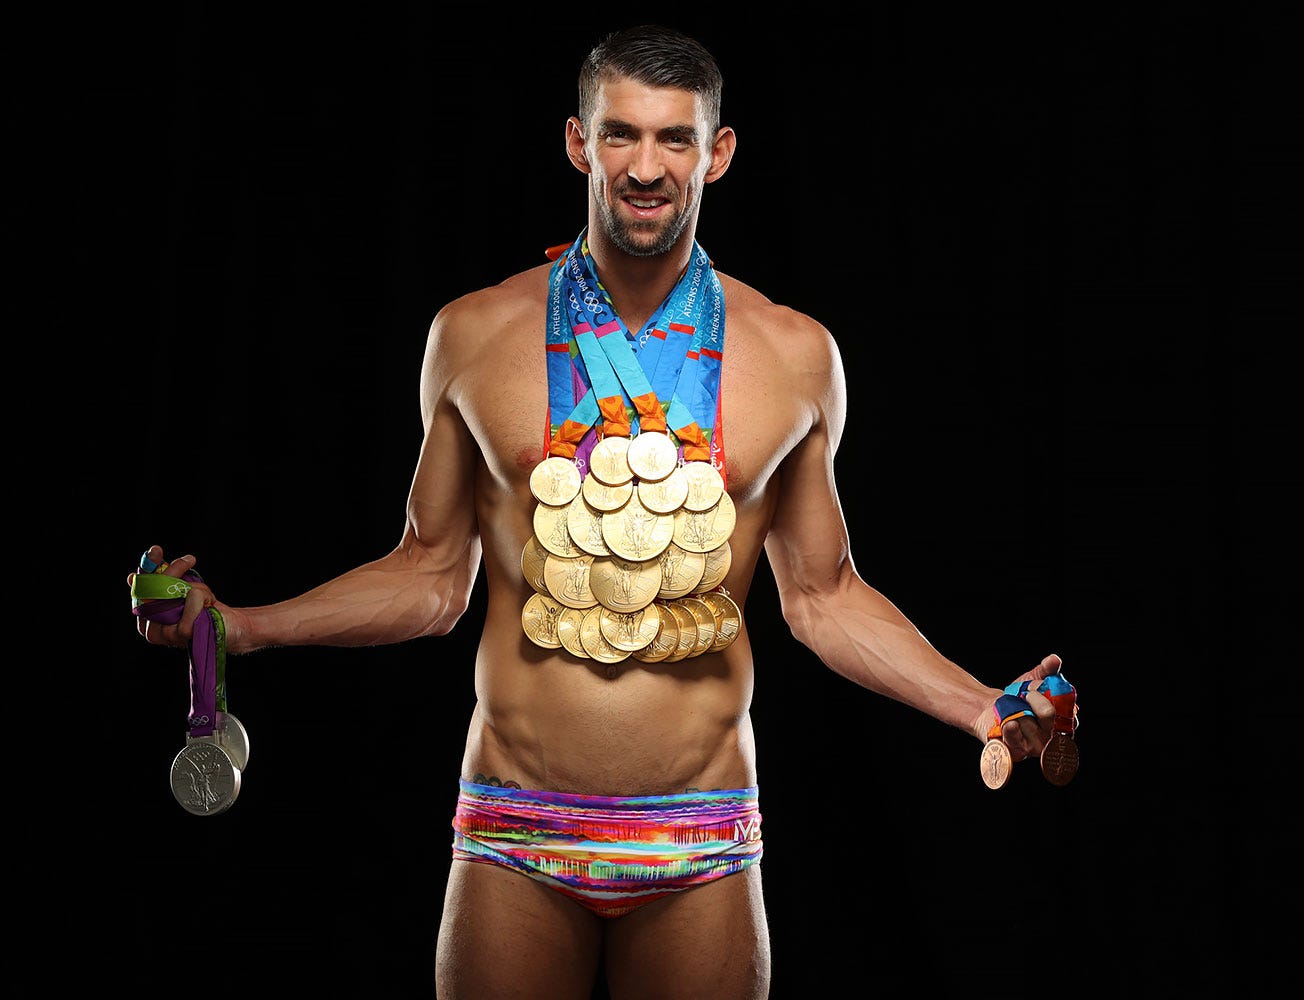 Káº¿t quáº£ hÃ¬nh áº£nh cho Michael Phelps